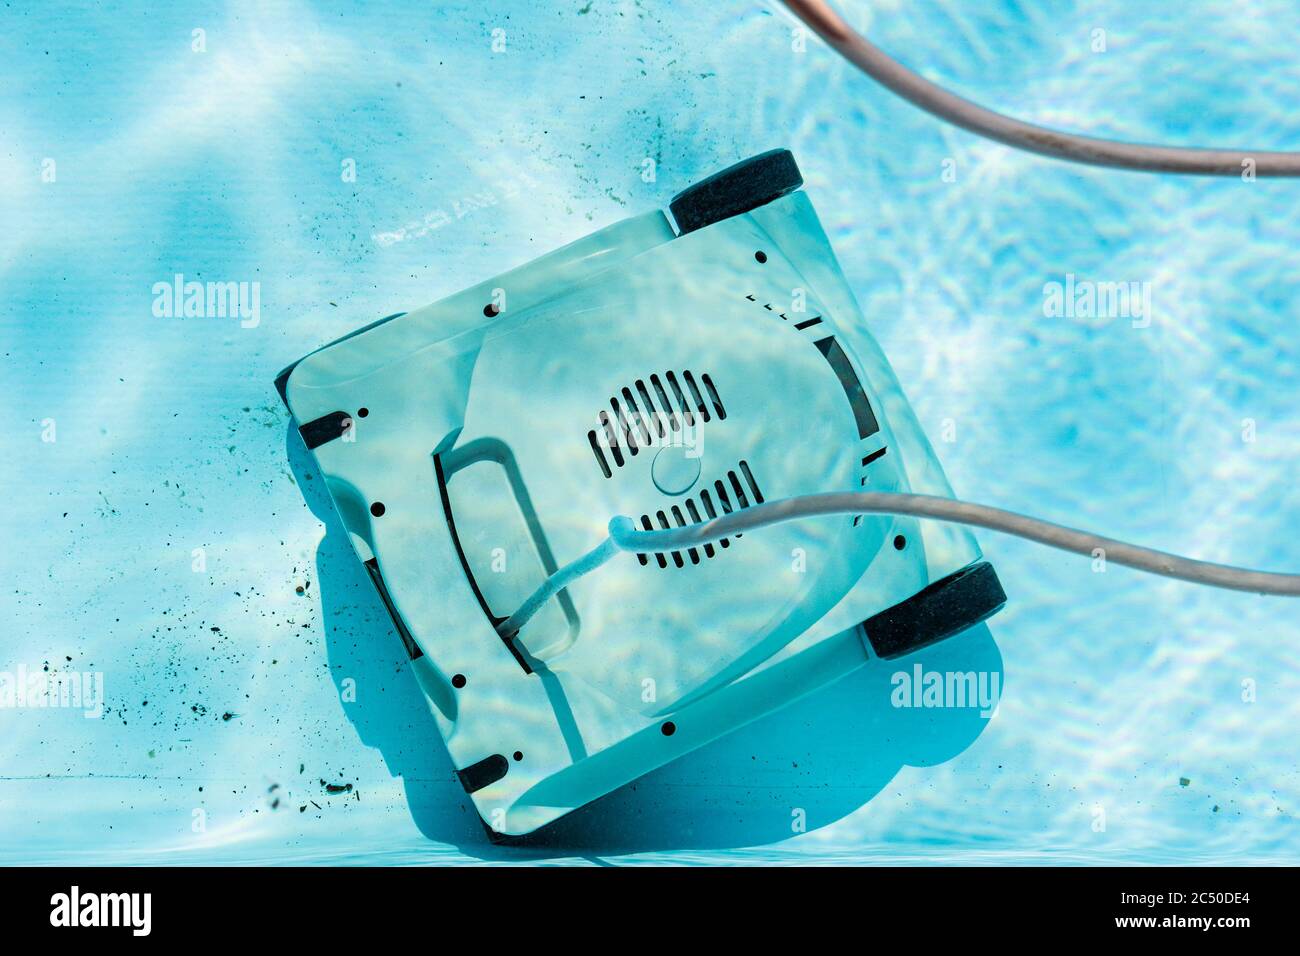 Draufsicht auf einen automatischen Unterwasserroboter-Pool-Staubsauger, der den Schmutz auf dem Boden reinigt. Stockfoto